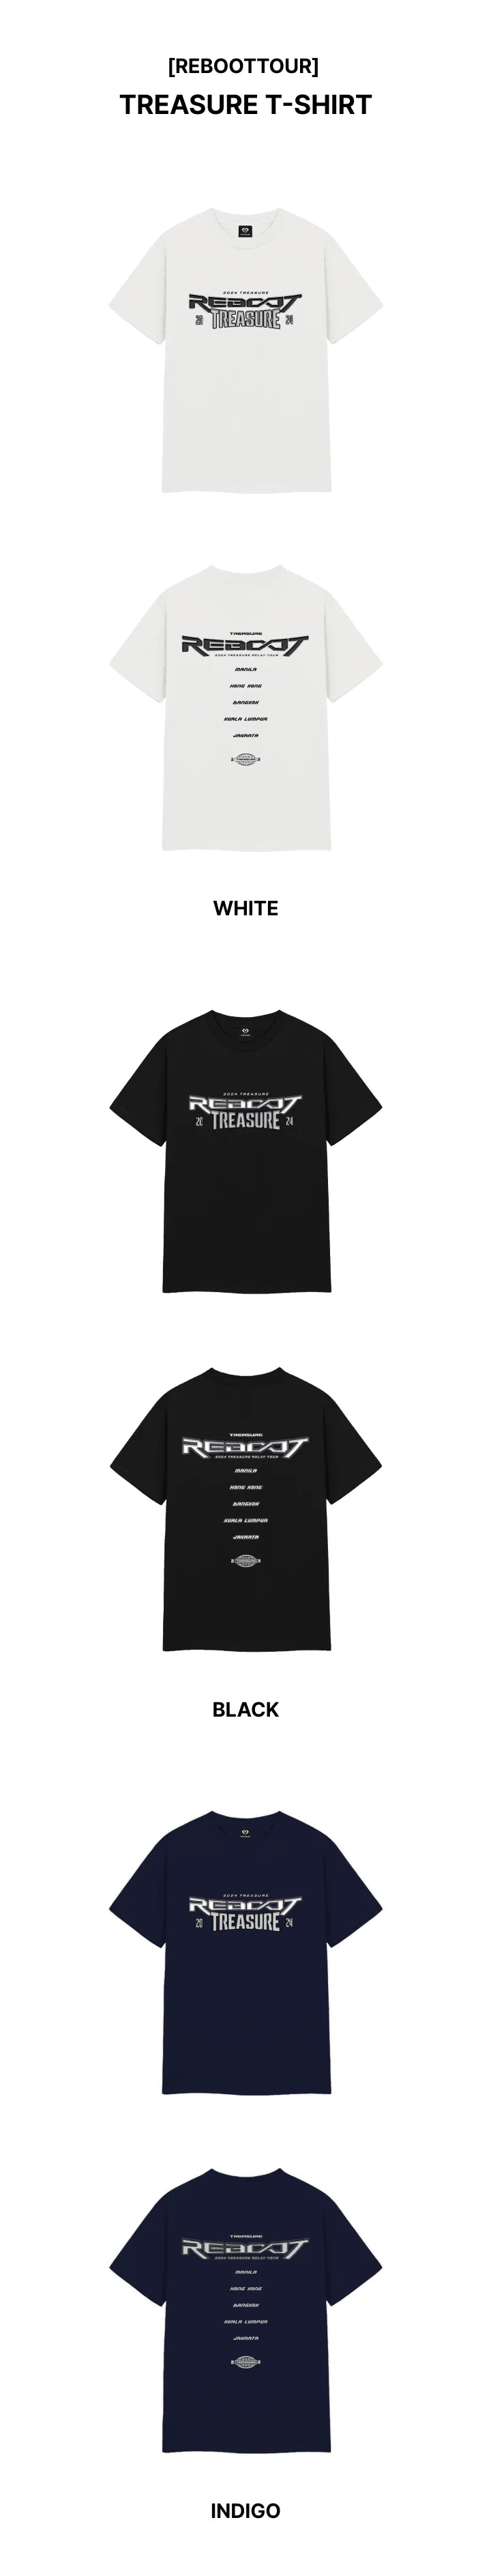 TREASURE - REBOOT 2024 TREASURE RELAY TOUR OFFICIAL MD TREASURE T 